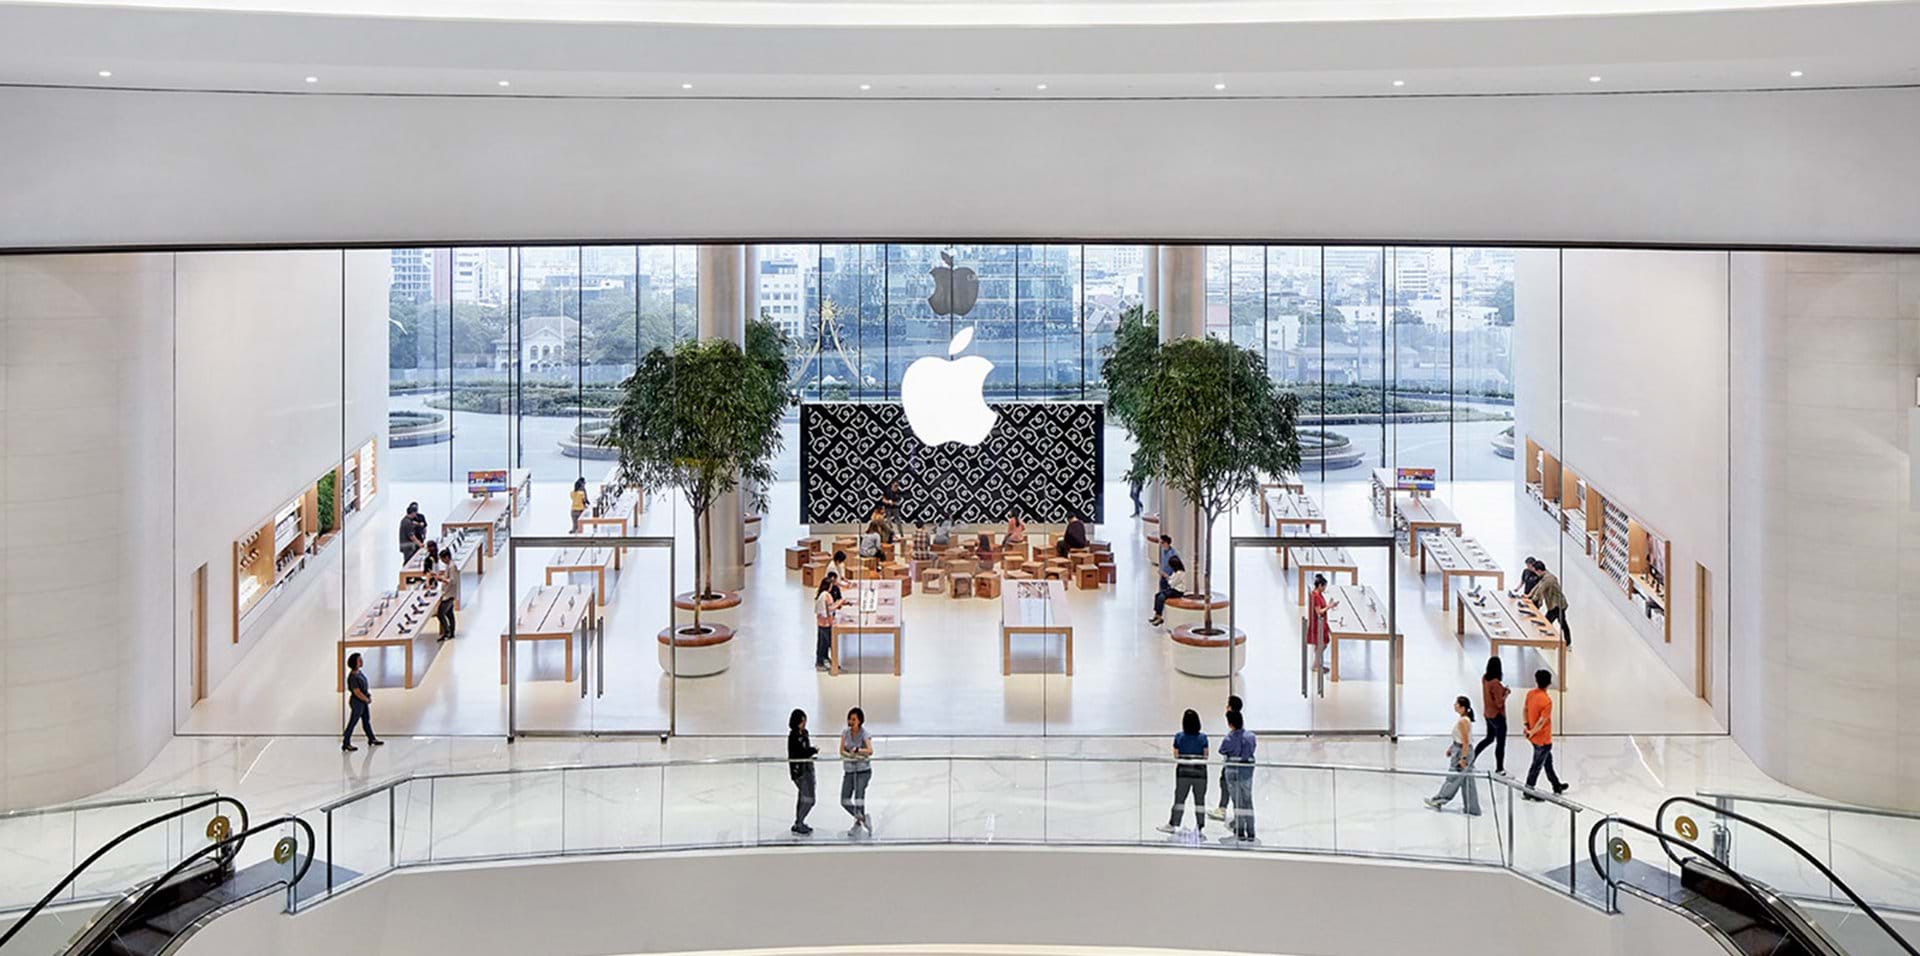 建築事務所 Foster + Partnersが手がけた「Apple Iconsiam」 タイで